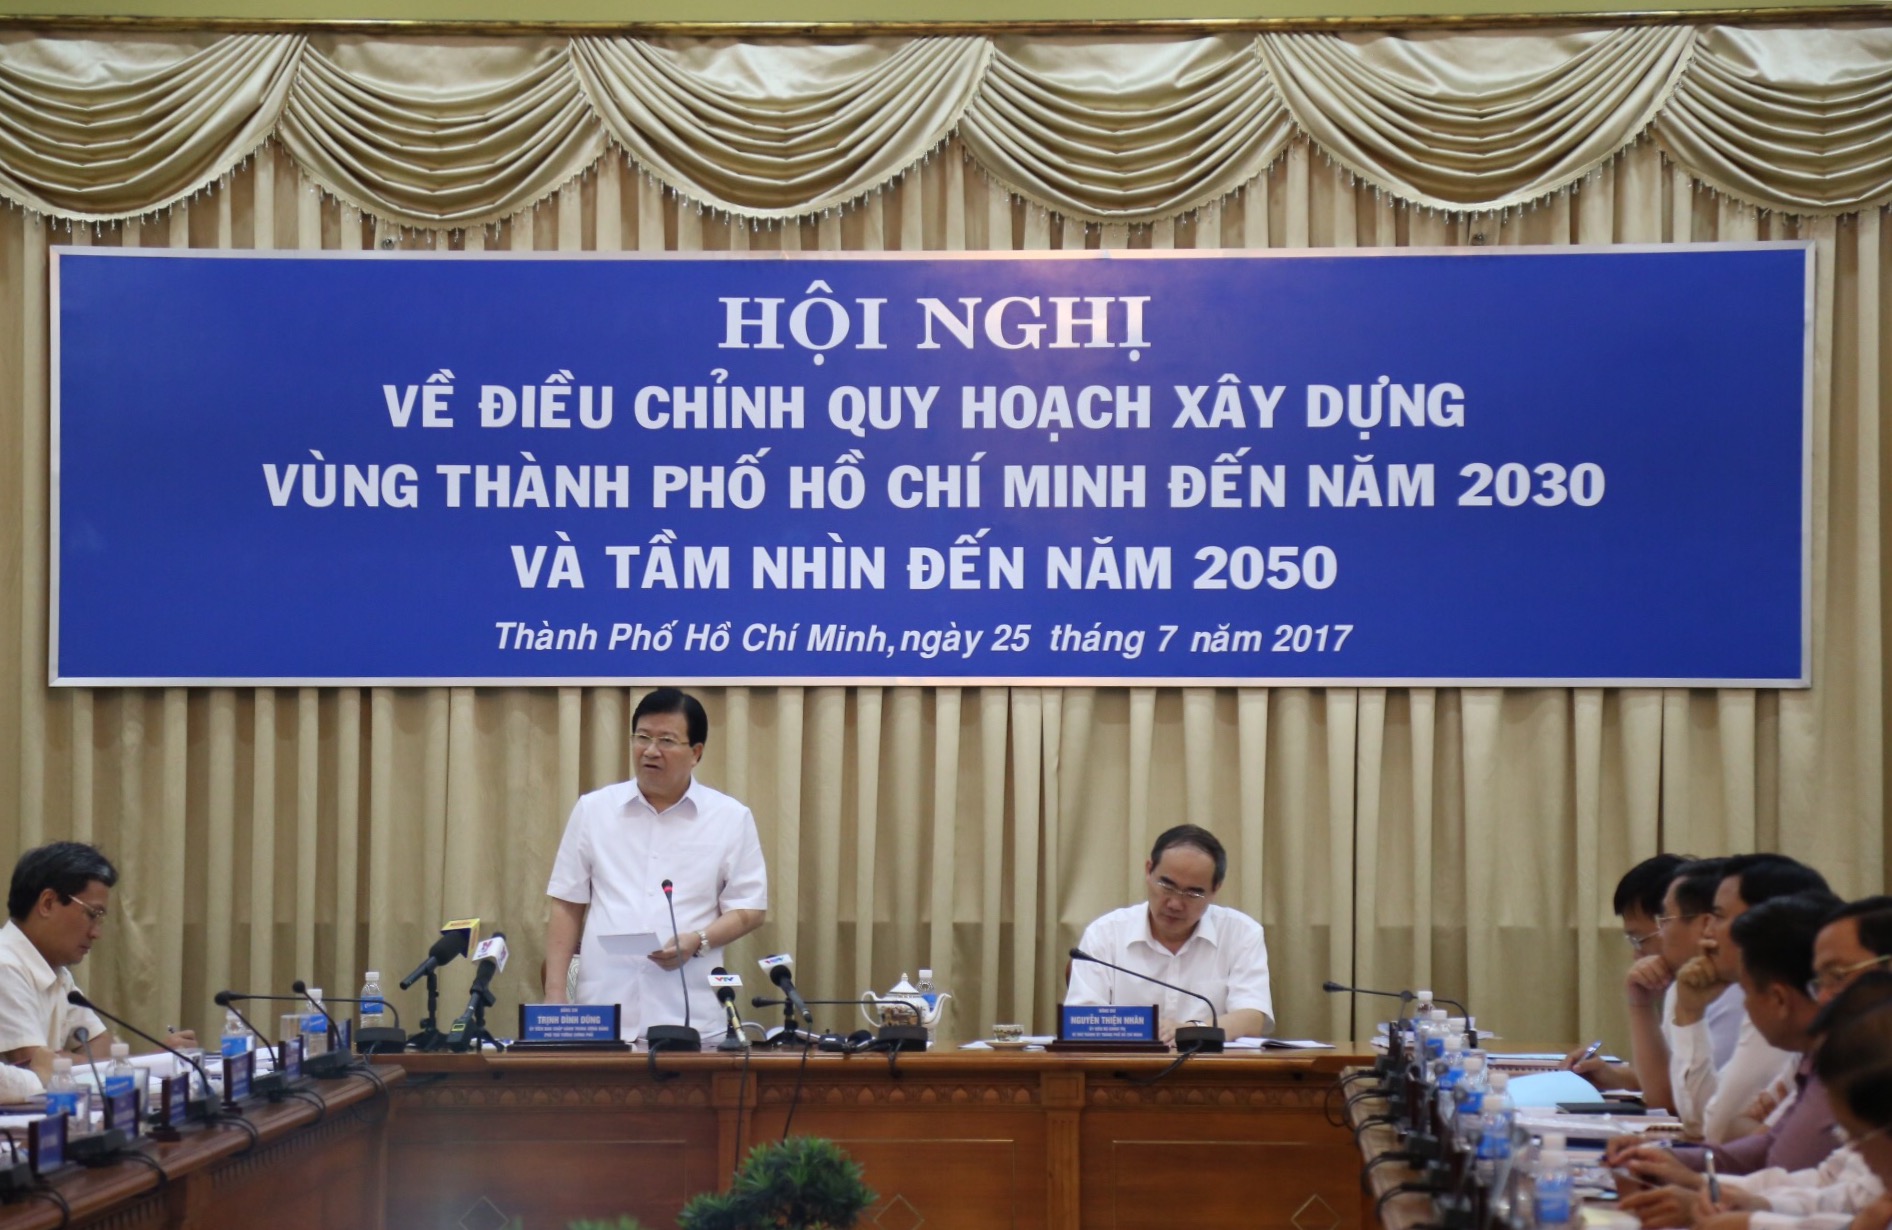 Phó Thủ tướng Trịnh Đình Dũng và Bí thư Thành ủy TP.HCM Nguyễn Thiện Nhân đều nhất trí cho rằng, việc điều chỉnh quy hoạch phải nhằm tạo cơ sở để phát triển vùng TP.HCM trở thành động lực phát triển kinh tế của cả nước.